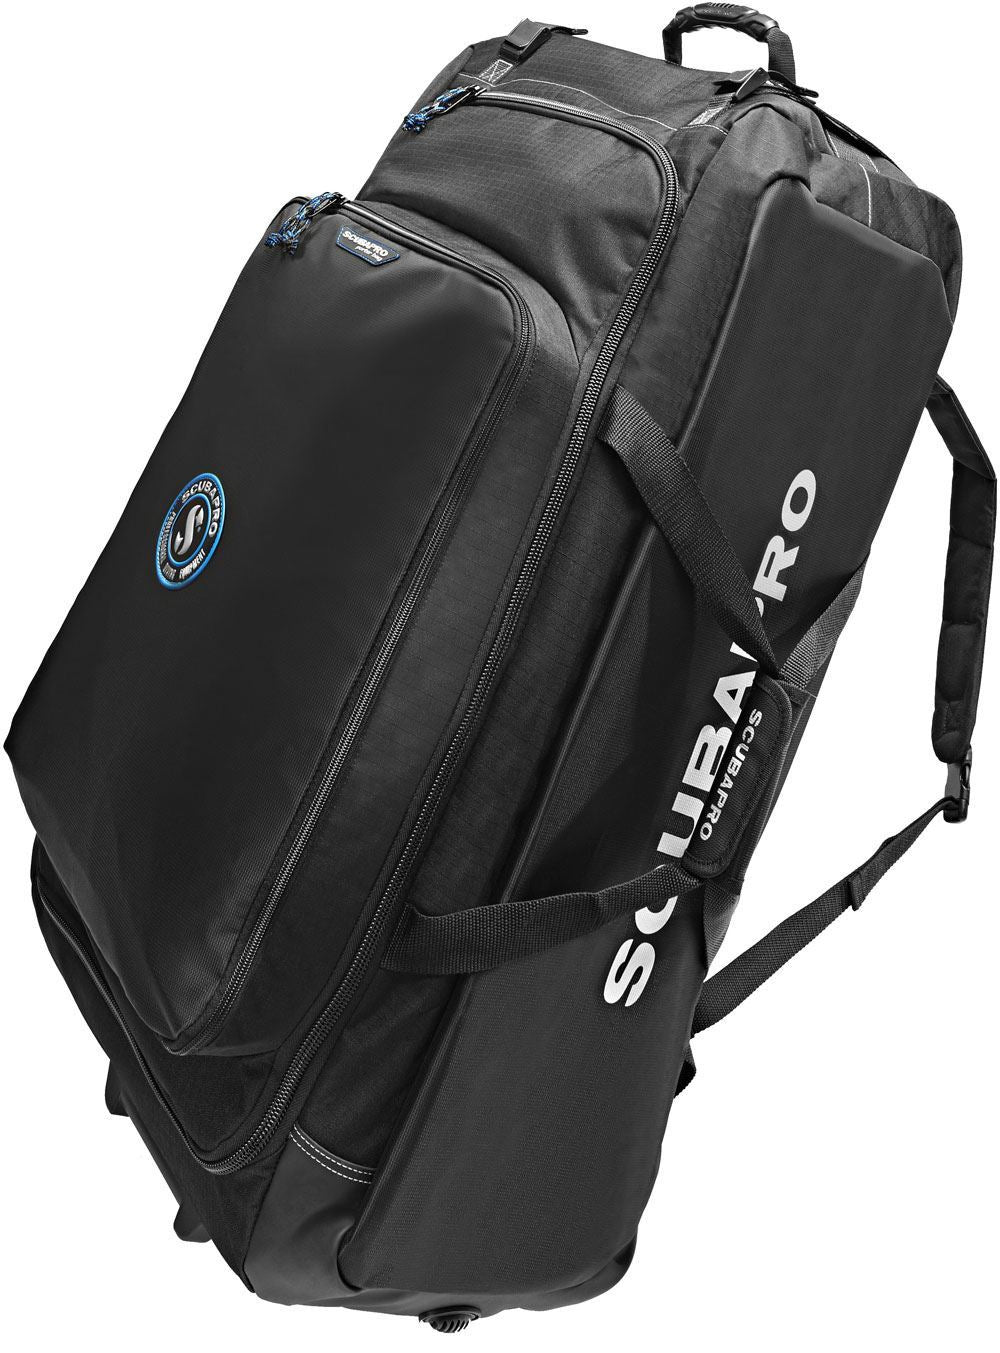 Scubapro - Grejtaske Porter Bag 125L + Porter folded